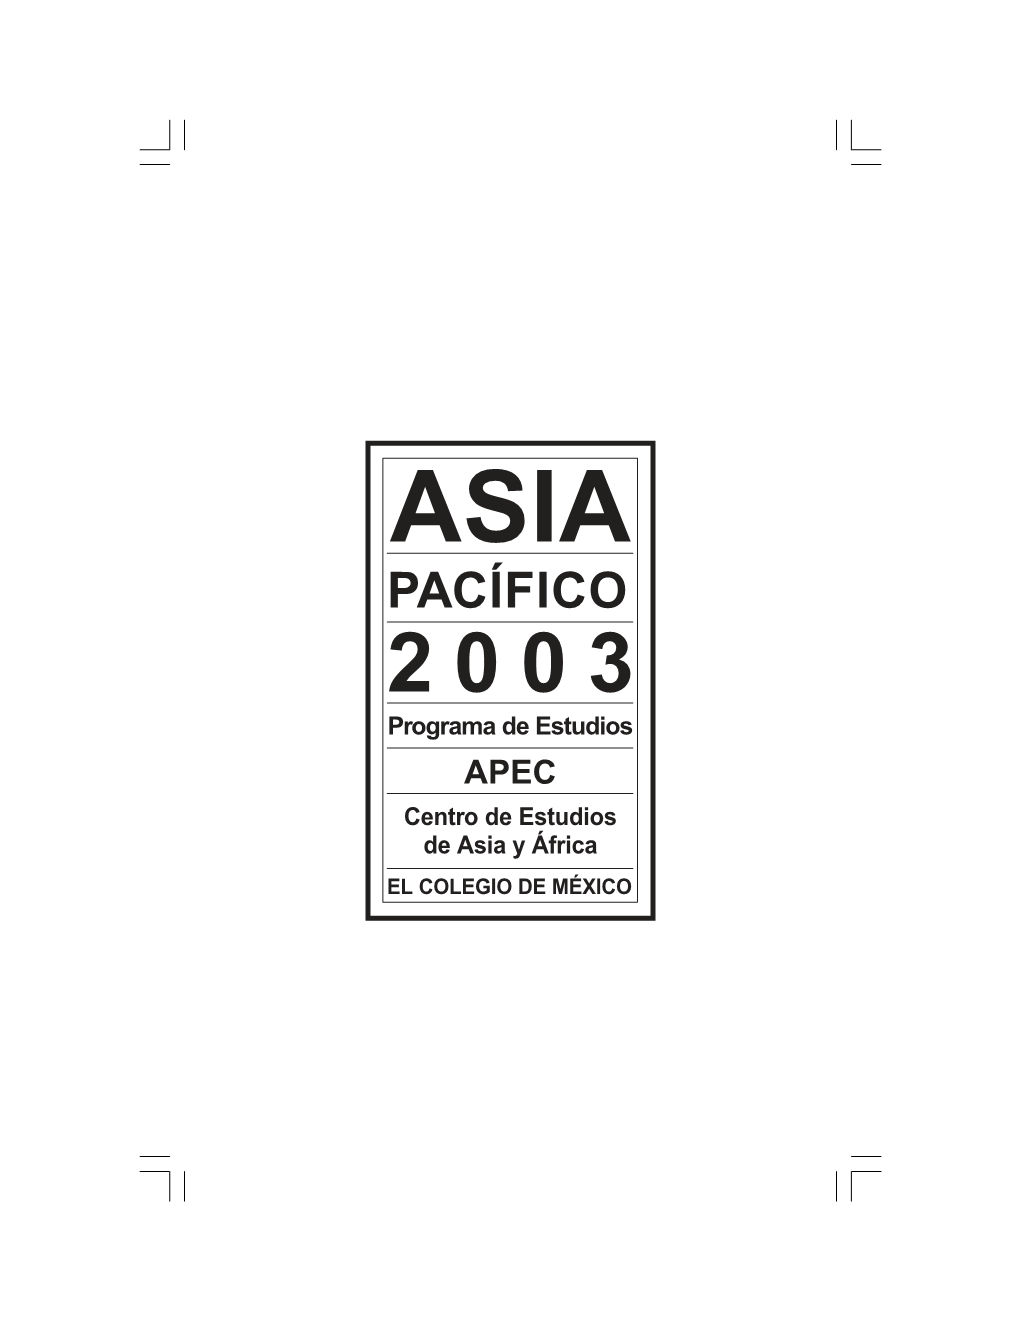 PACÍFICO 2 0 0 3 Programa De Estudios APEC Centro De Estudios De Asia Y África EL COLEGIO DE MÉXICO 4 ASIA PACÍFICO 2003